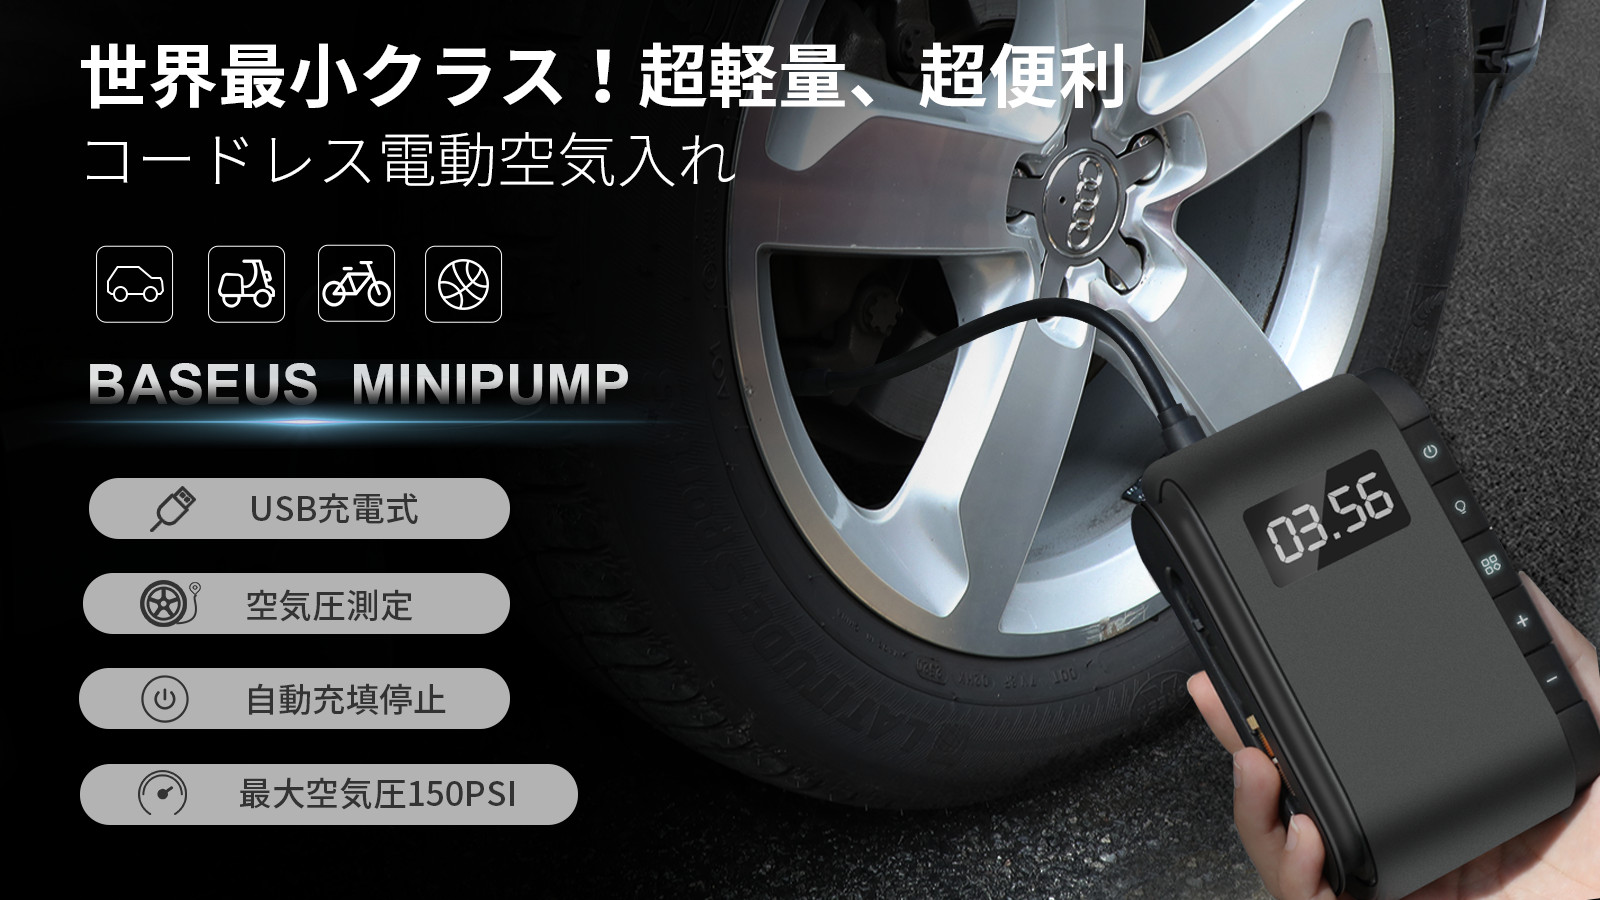 世界最小クラス Usb充電式 電動空気入れminipumpは日本に 初登場 株式会社日新広業のプレスリリース